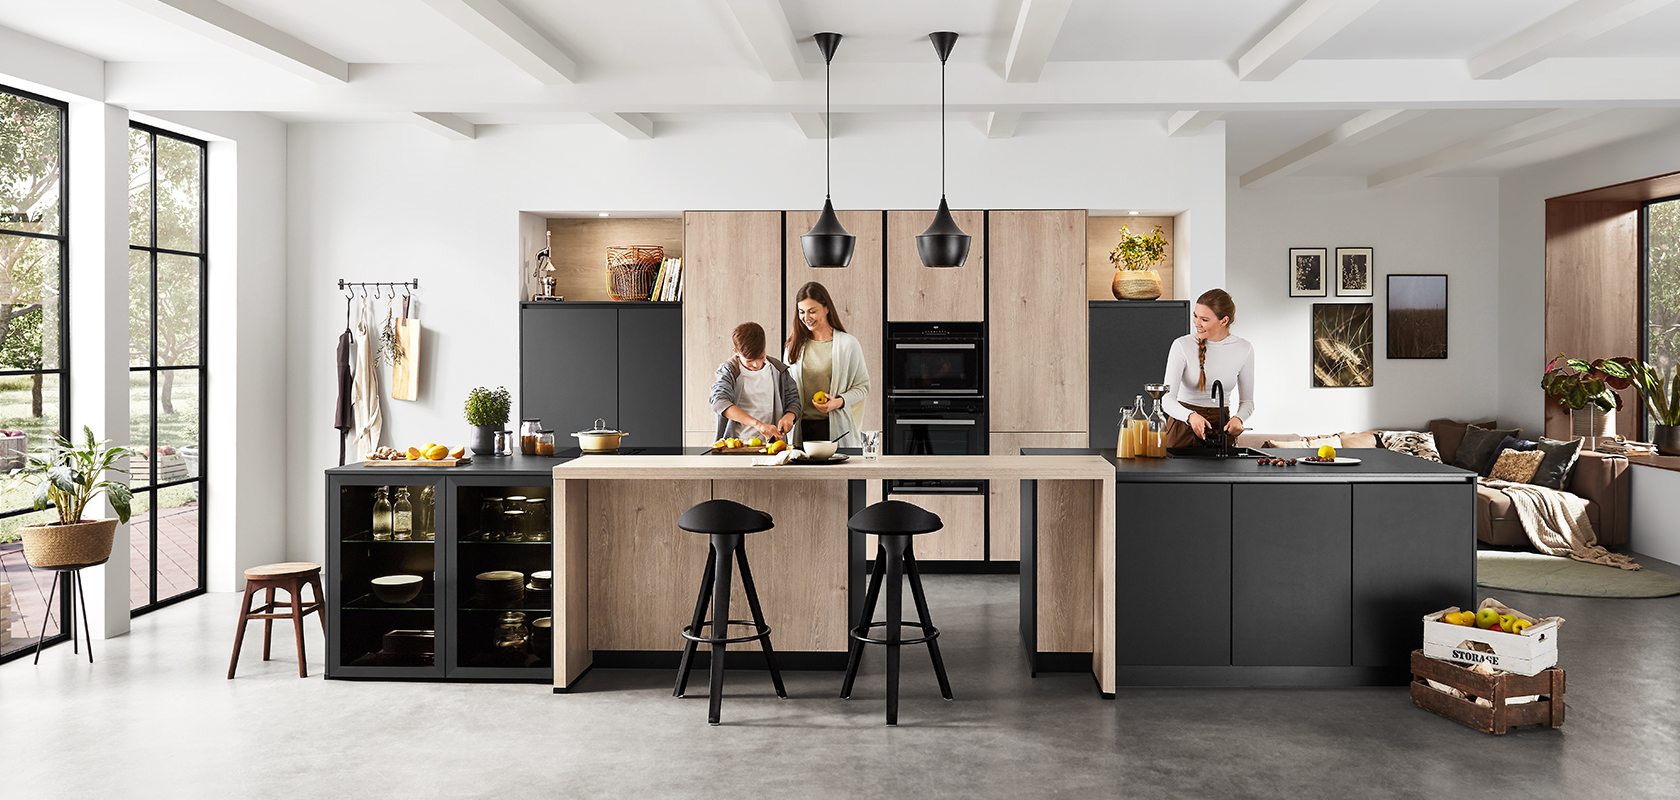 Interni di cucina moderna con un design spazioso e pulito che mostra due persone che cucinano e chiacchierano, mettendo in evidenza la funzionalità e lo stile contemporaneo.